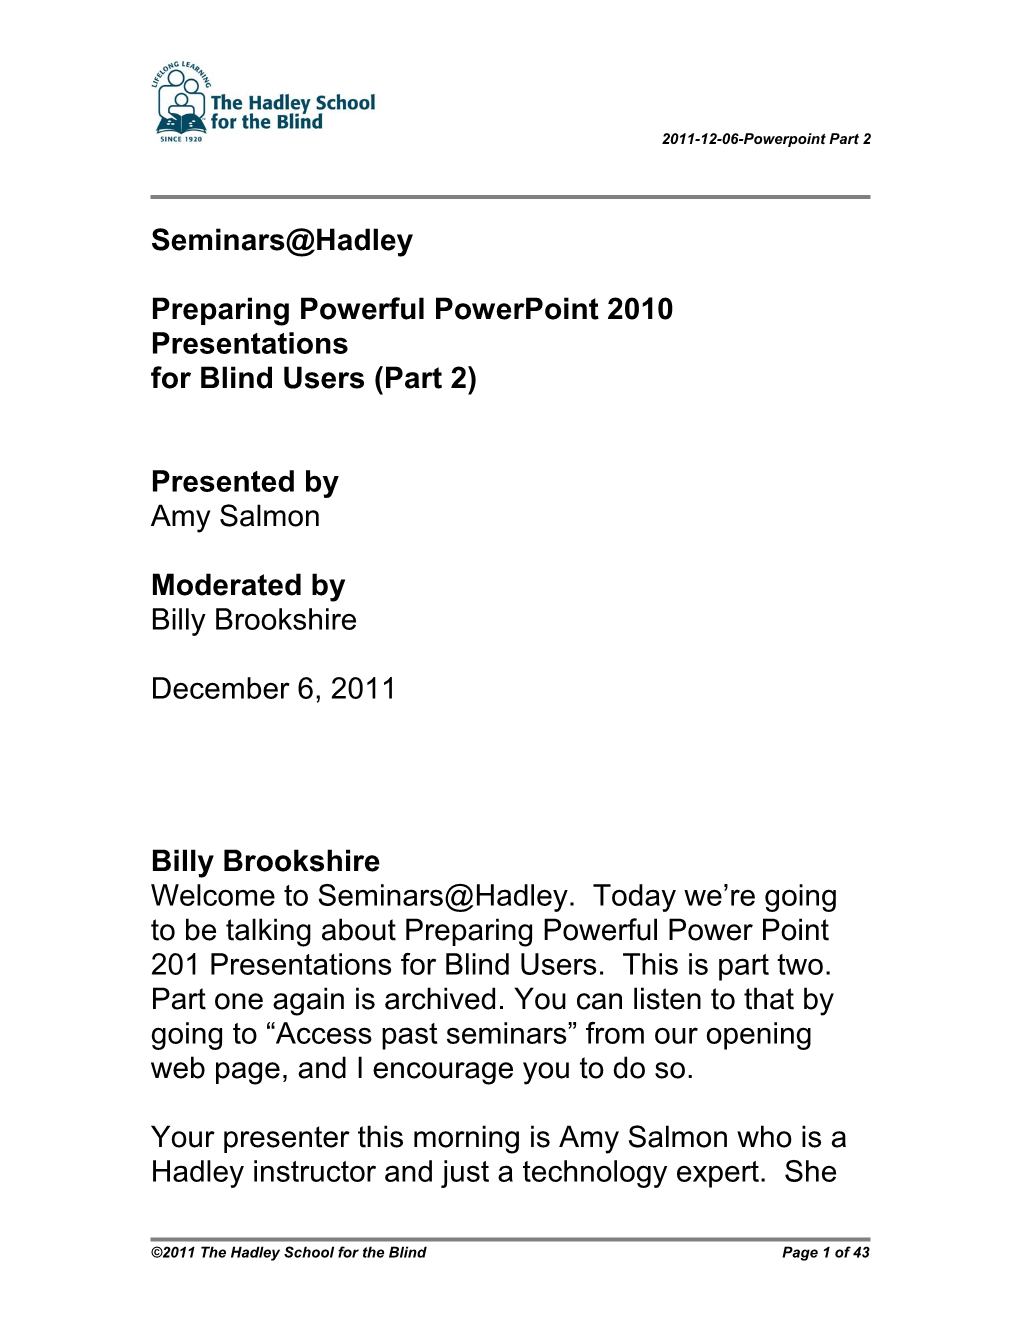 Preparing Powerful Powerpoint 2010 Presentations